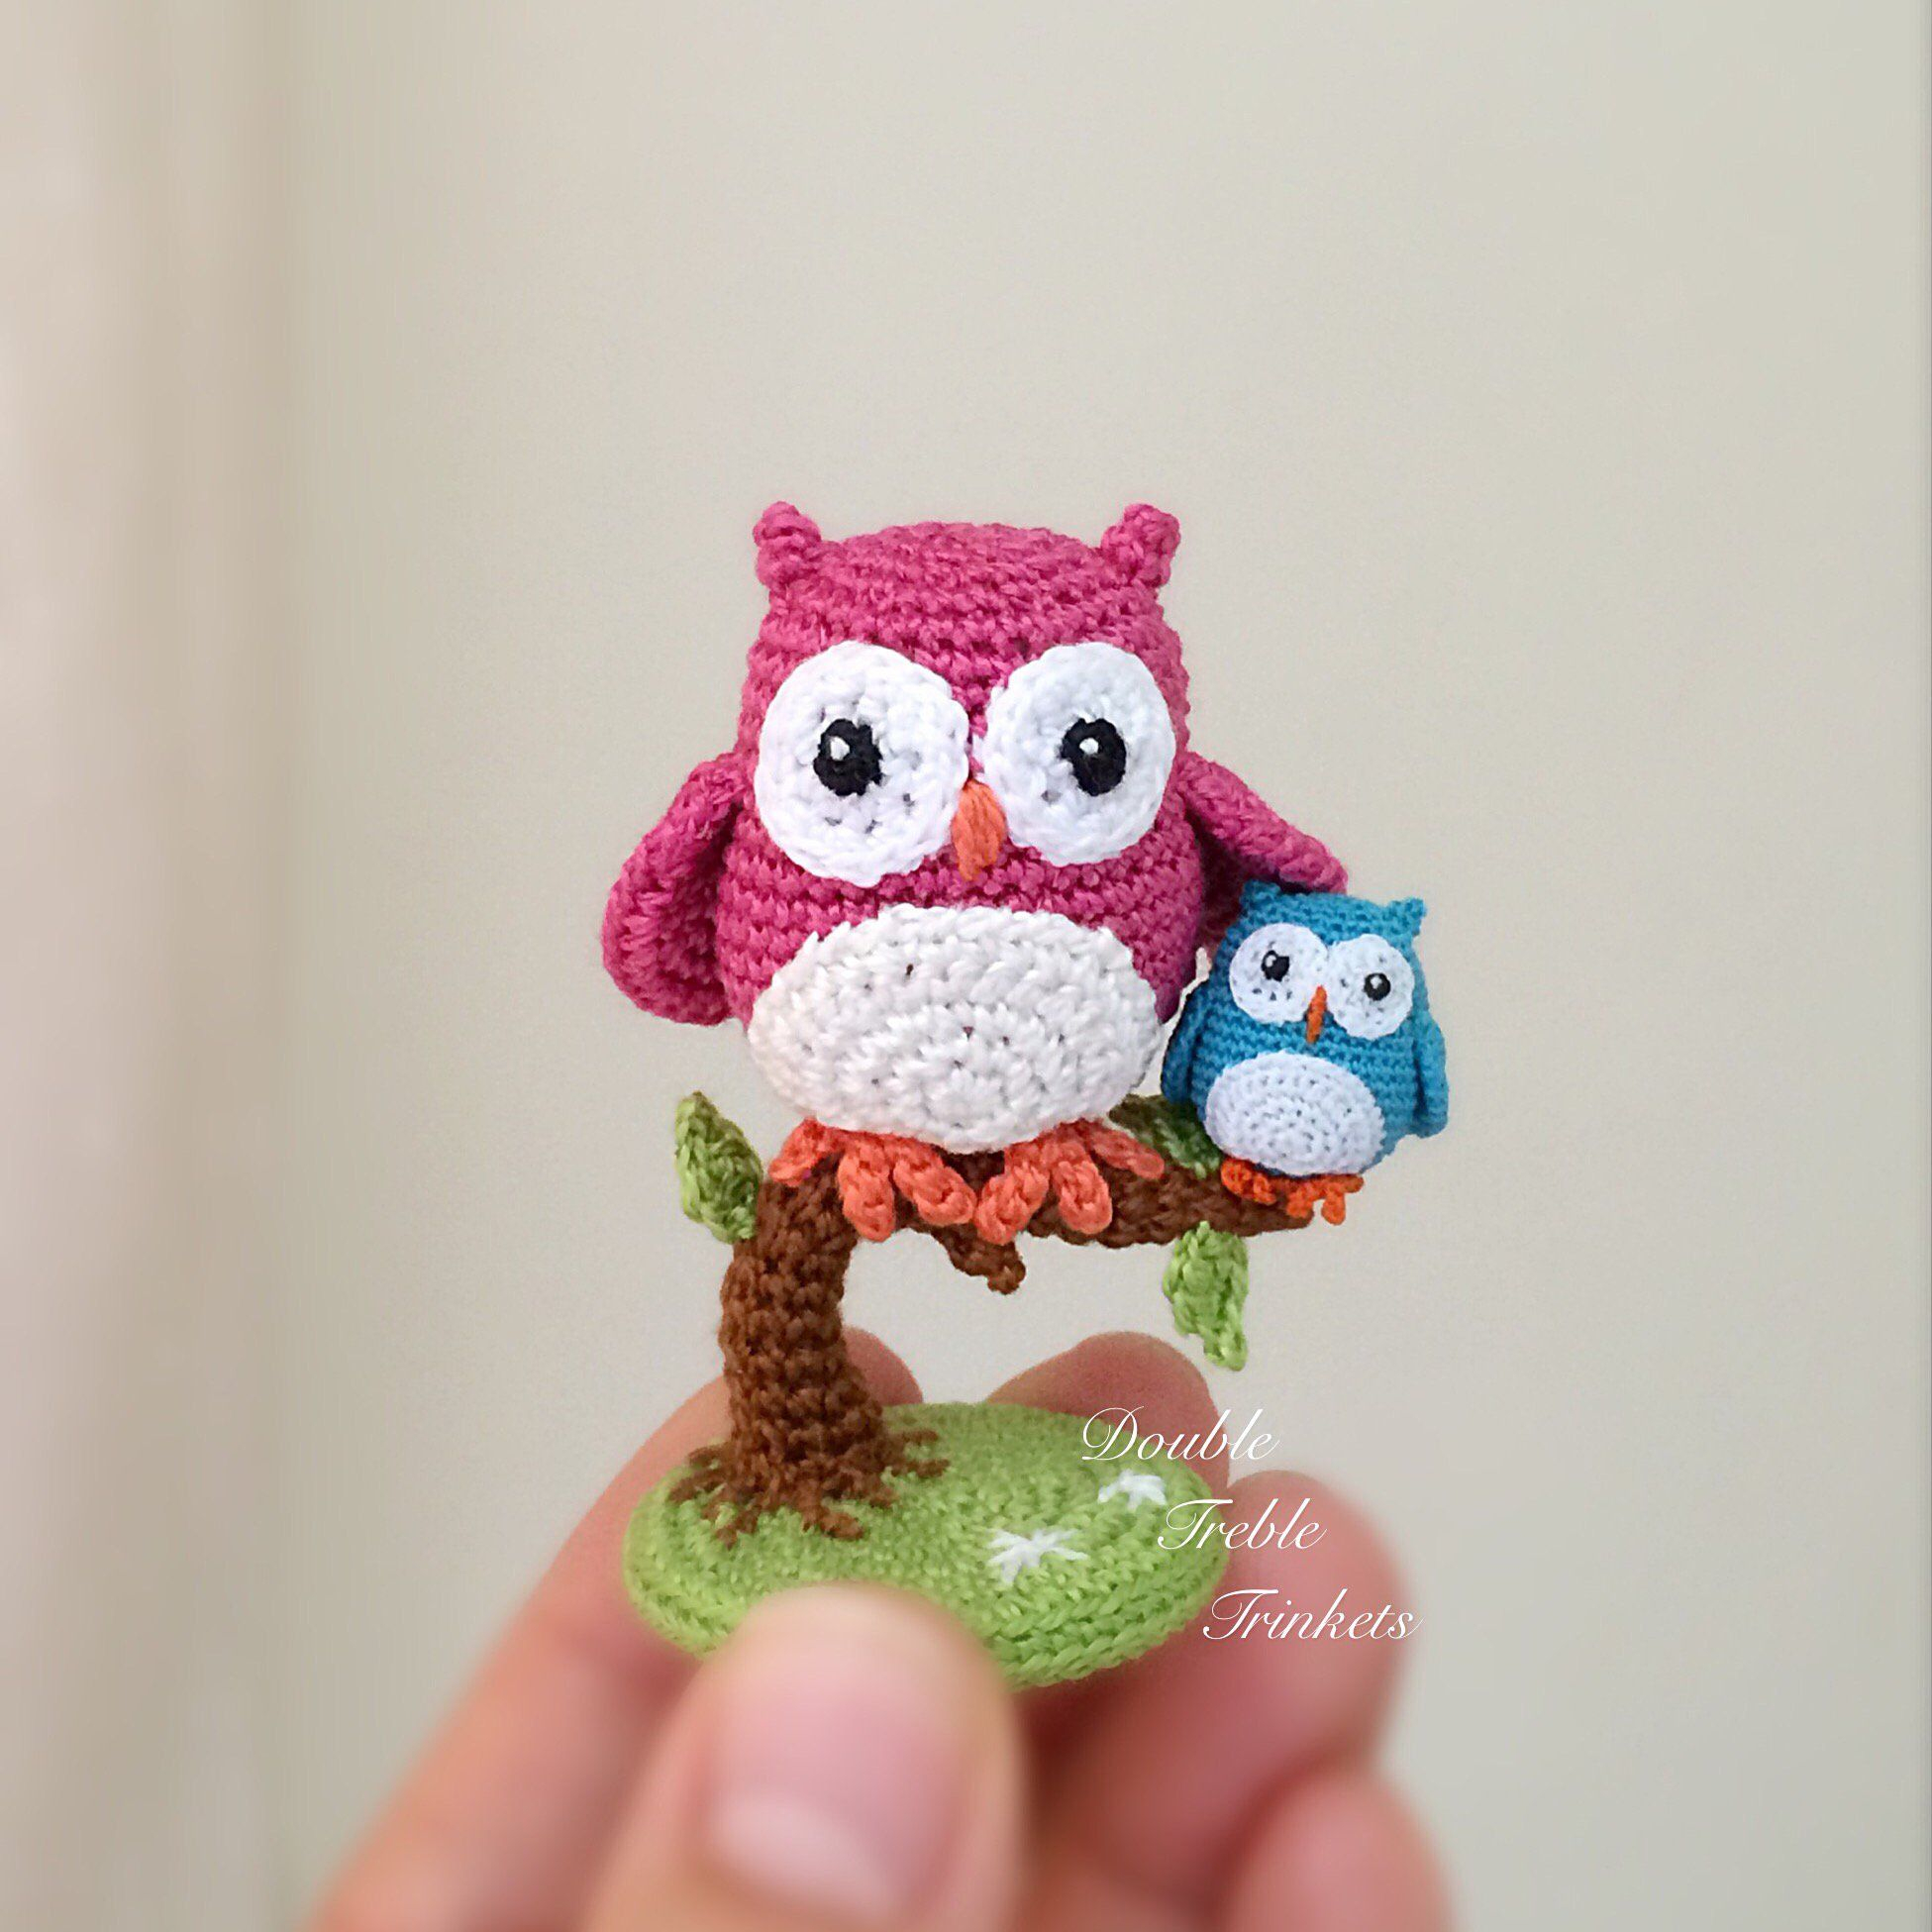 Free Owl Crochet Pattern Crochet Cute Little Owls With Free Pattern Crochet Pinterest